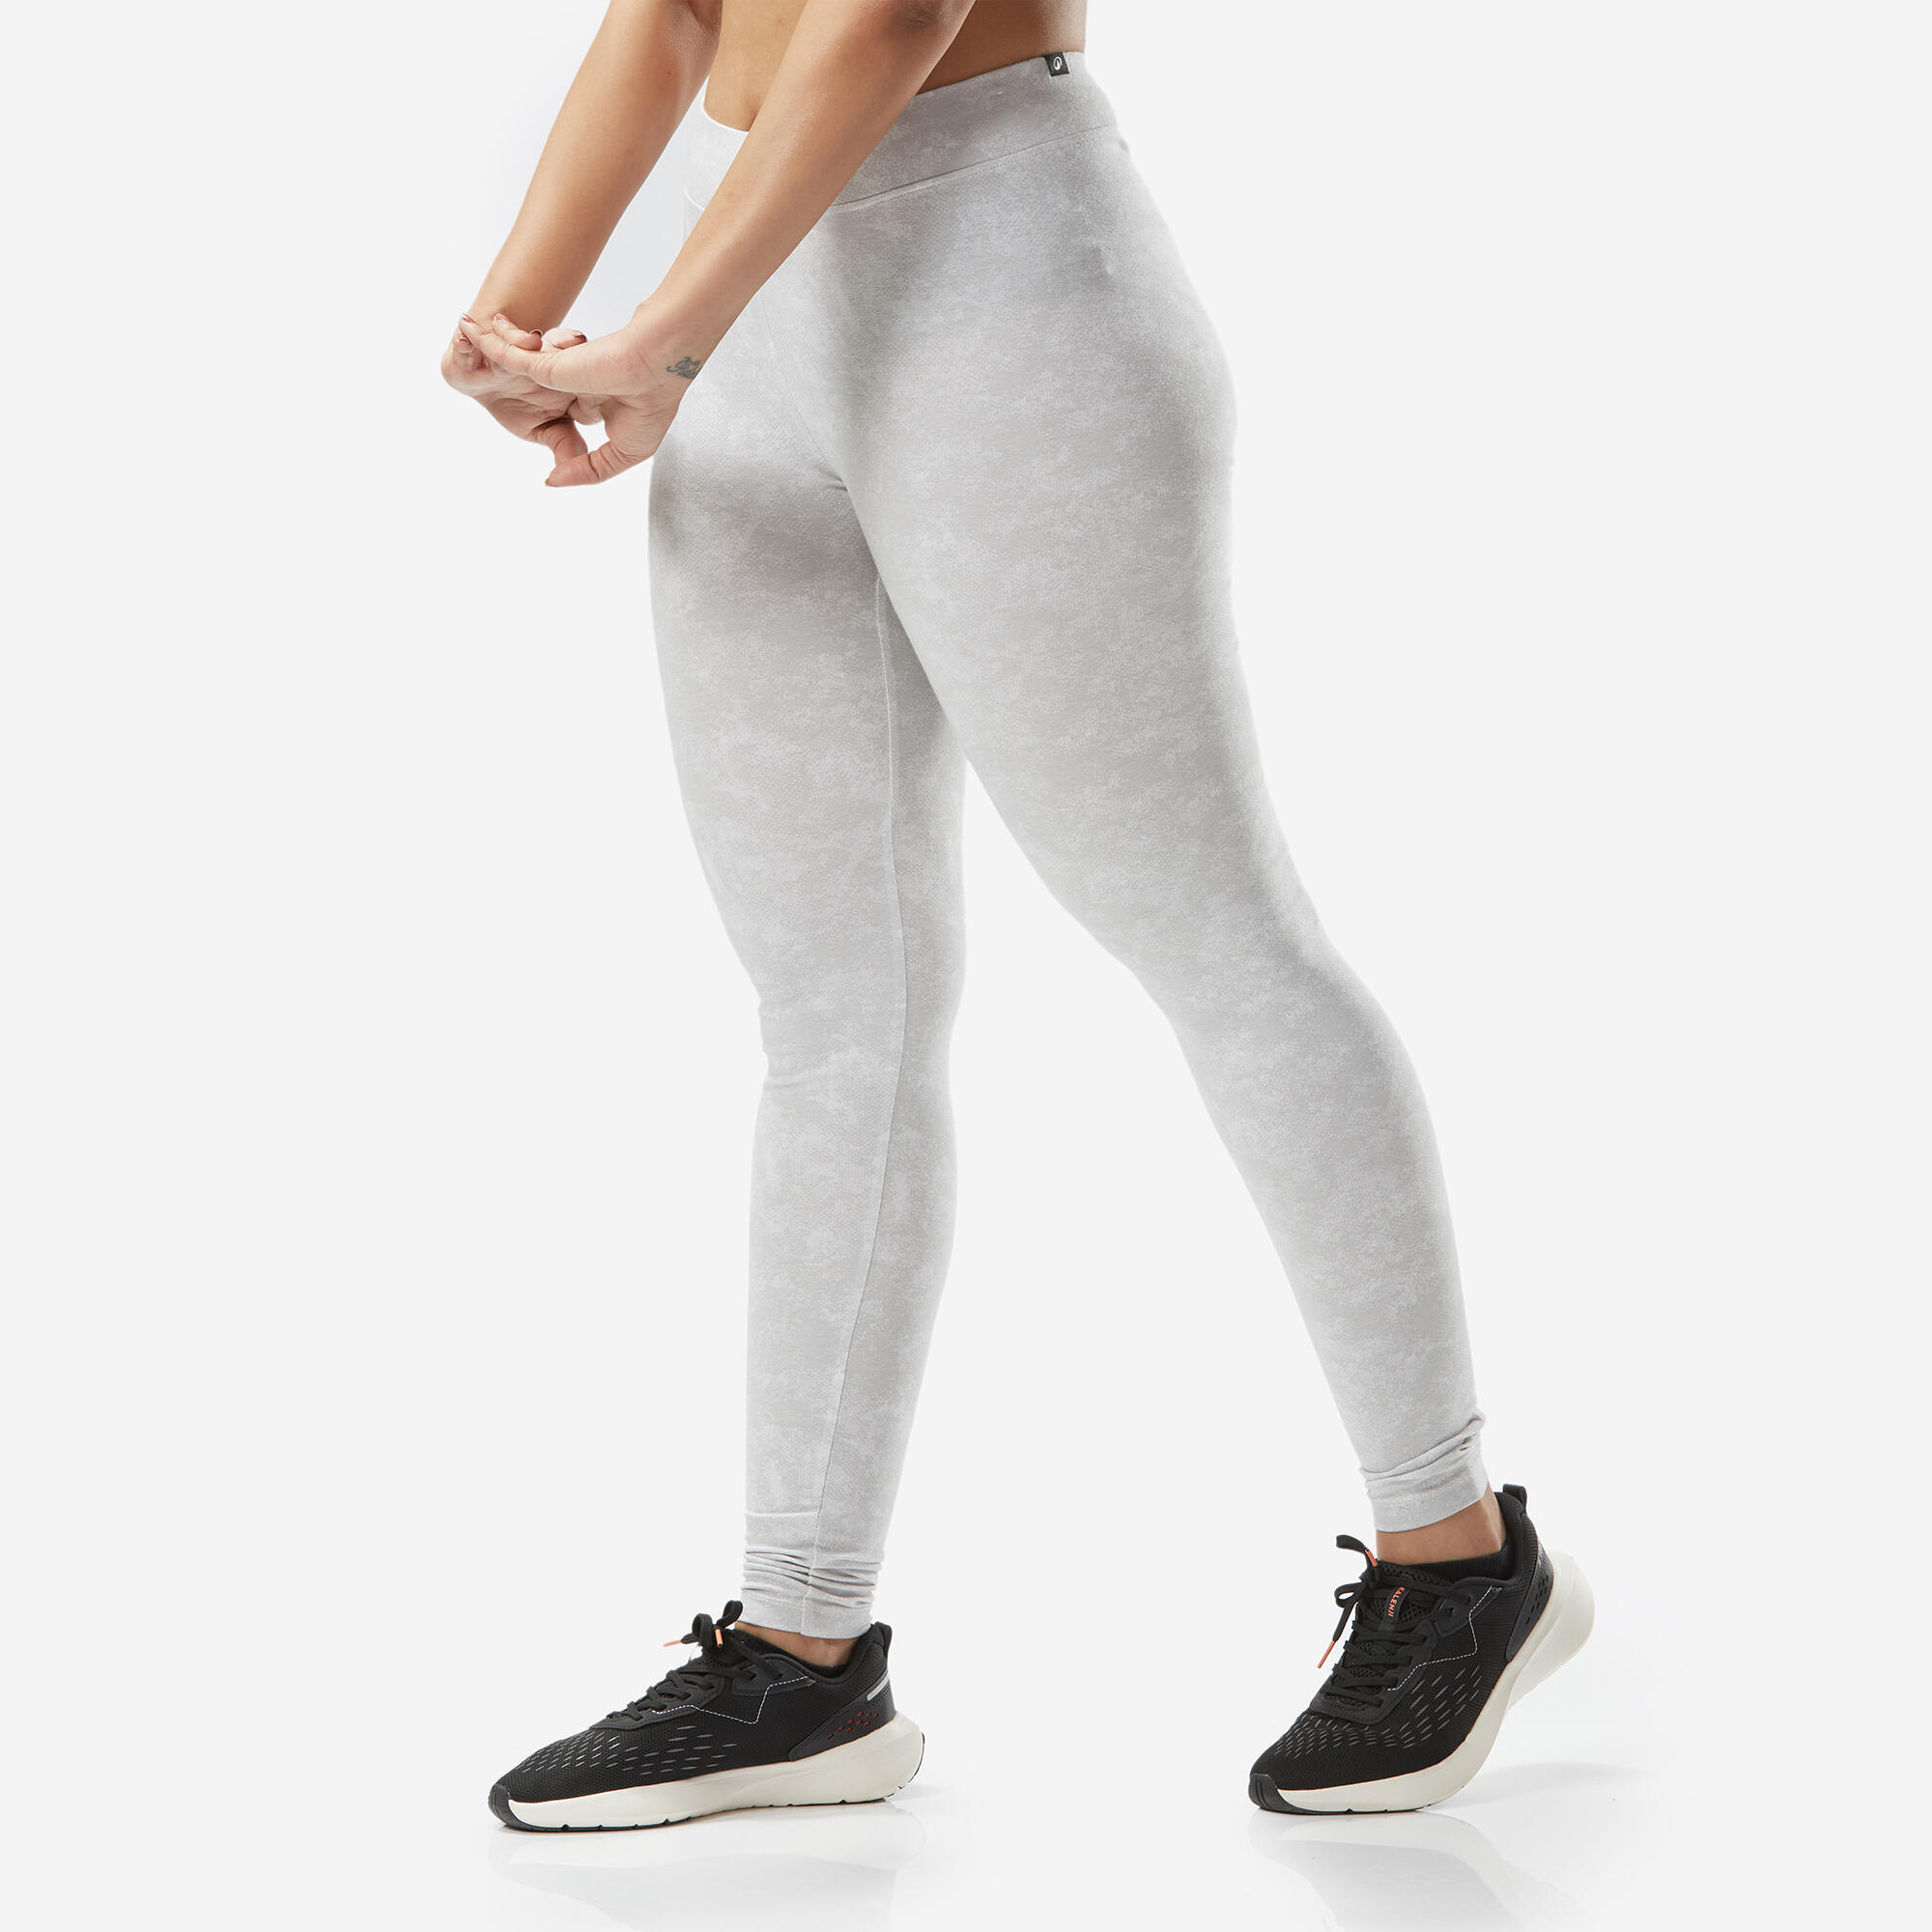 Women's Slim-Fit Fitness Leggings Fit+ 500 - Grey Print 6/6